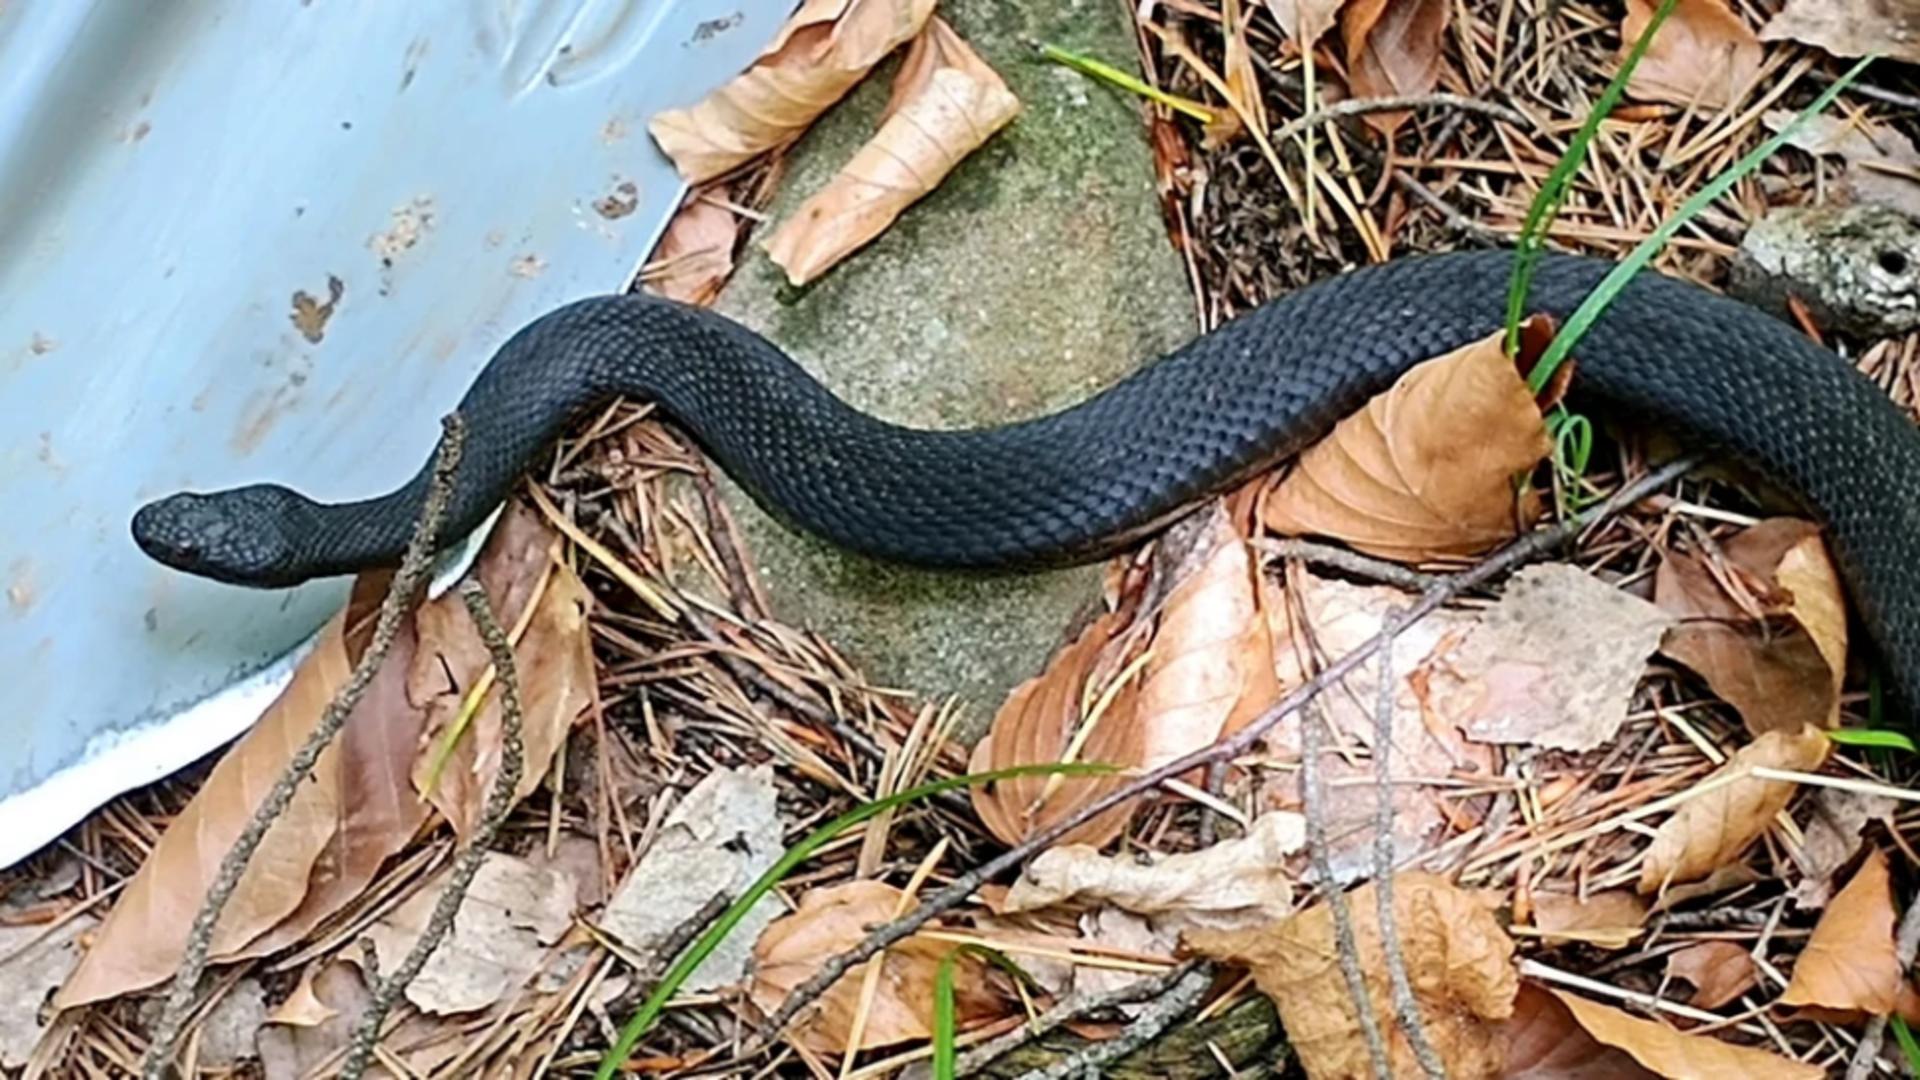 Vipera neagră, unul dintre cei mai rari șerpi din România. Foto/C. Chiriac